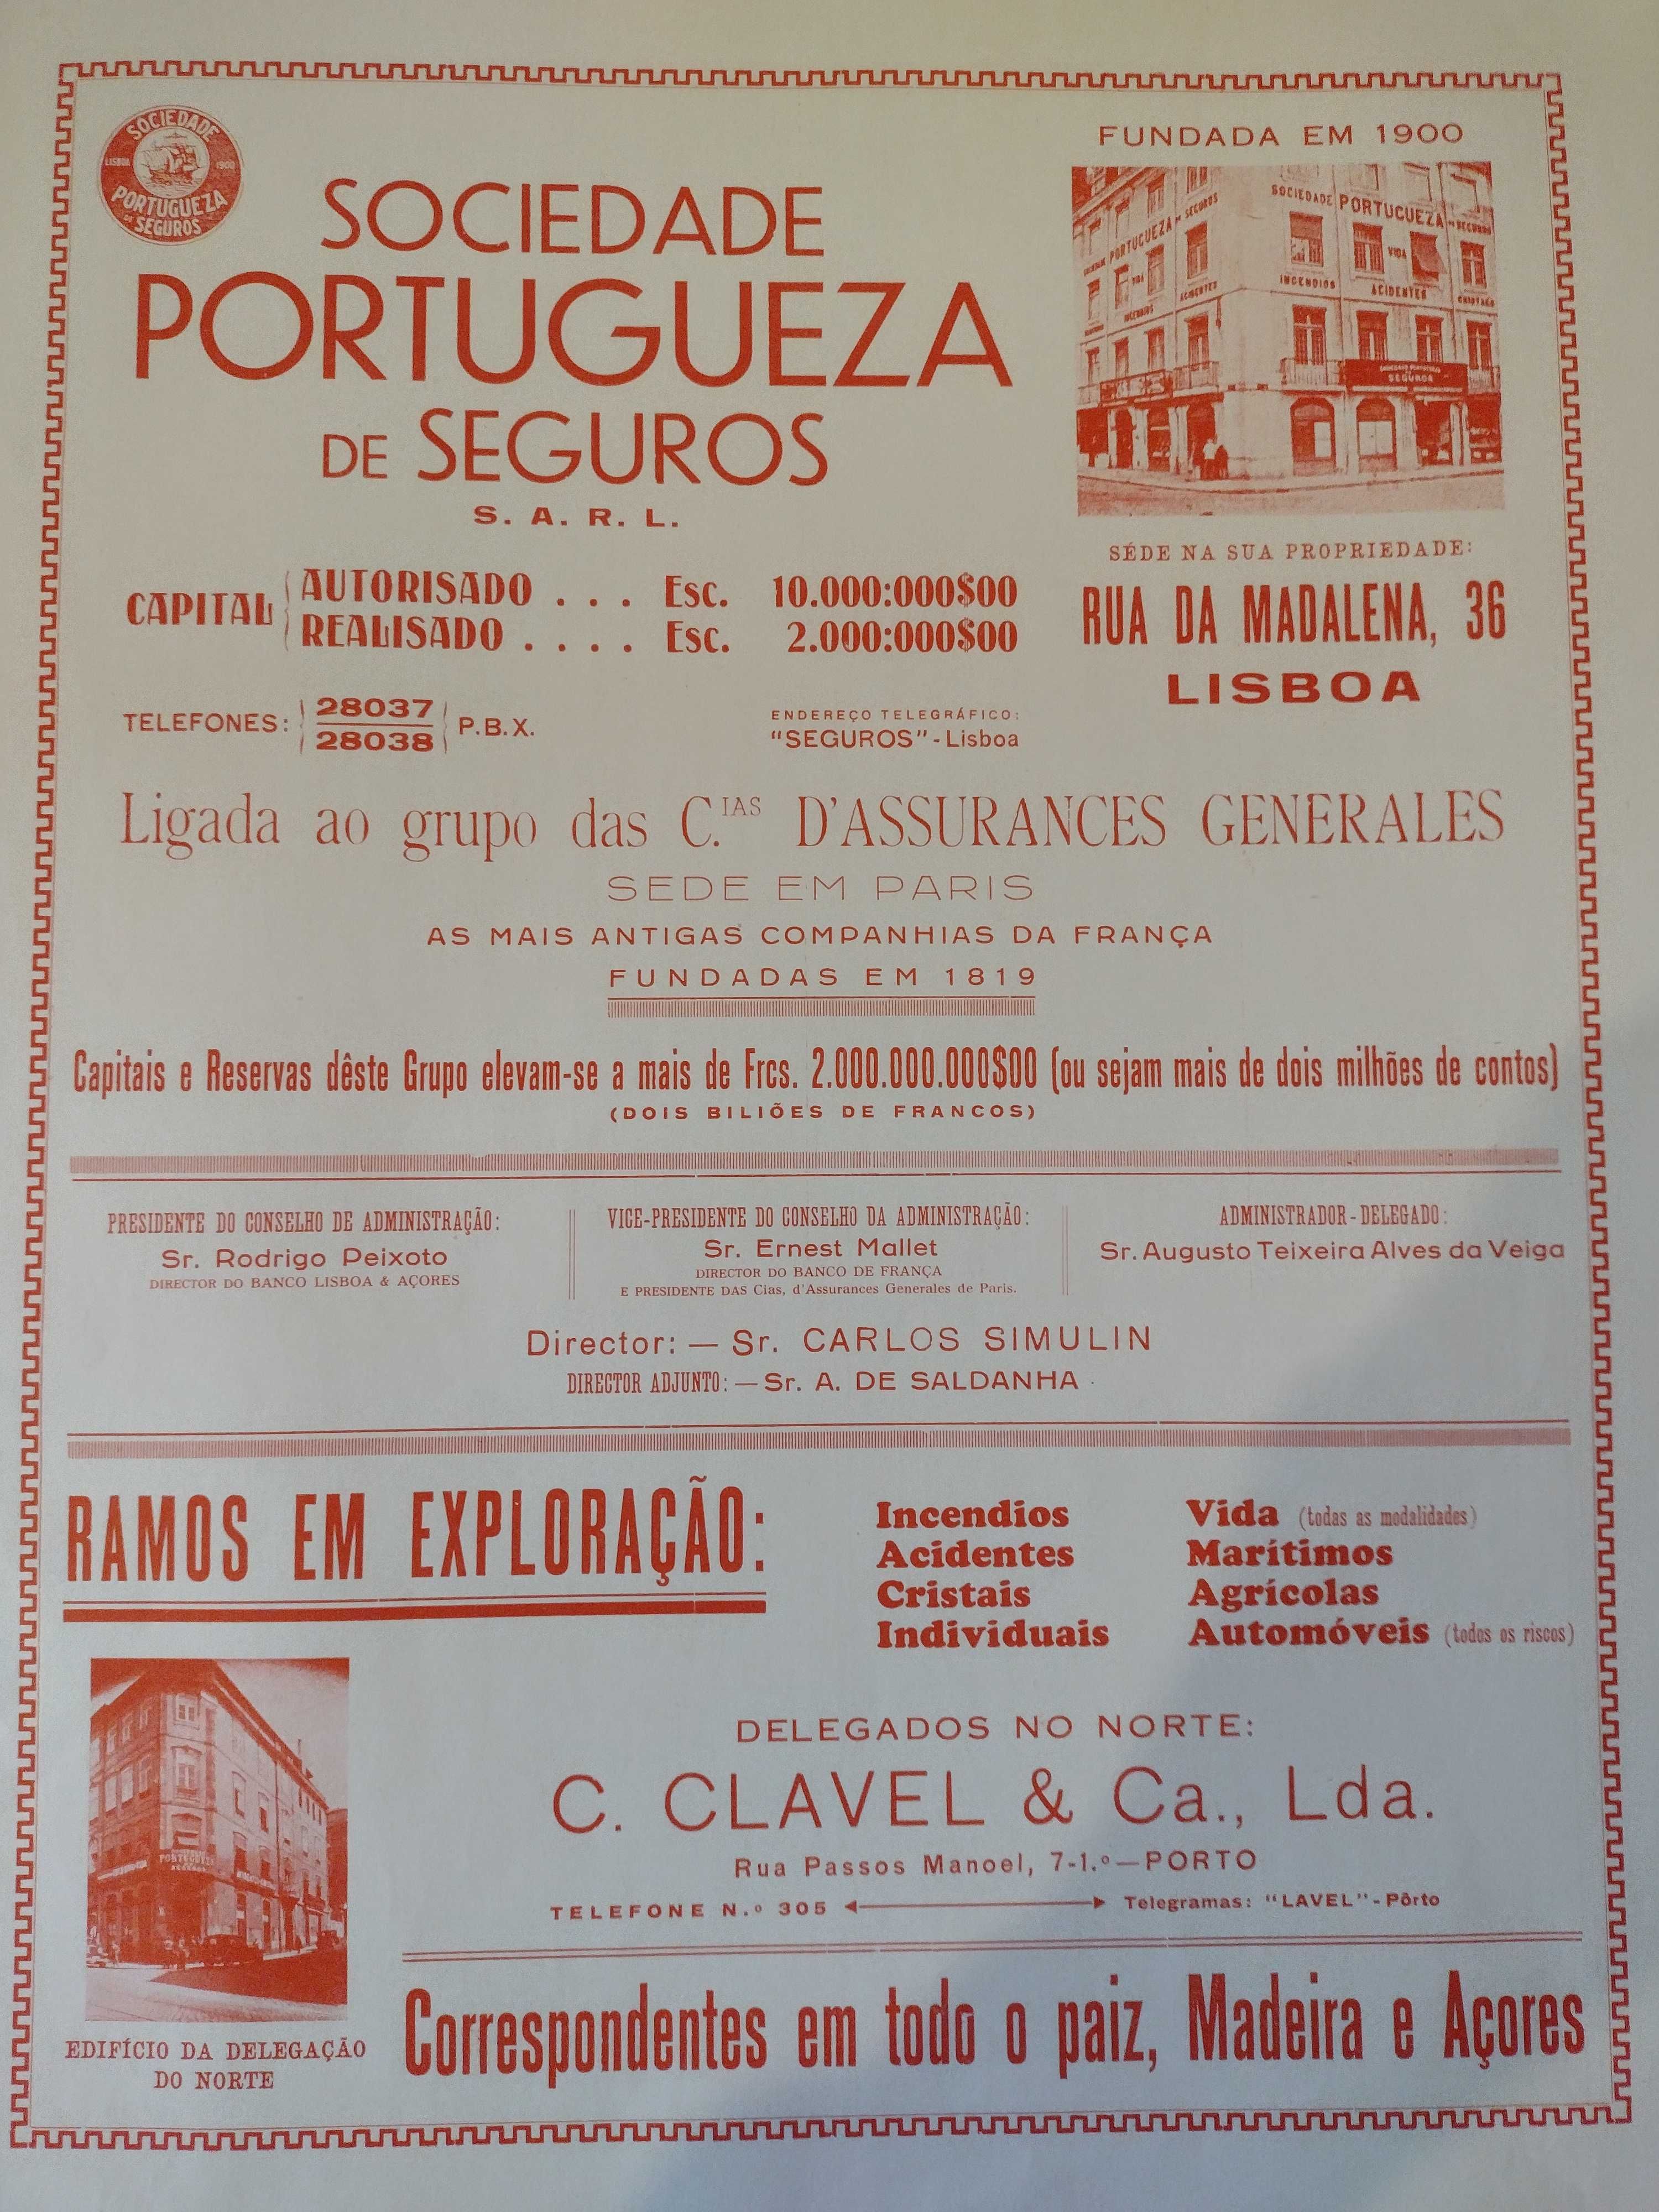 Sociedade Portugueza de Seguros Quadro com Publicidade da Época